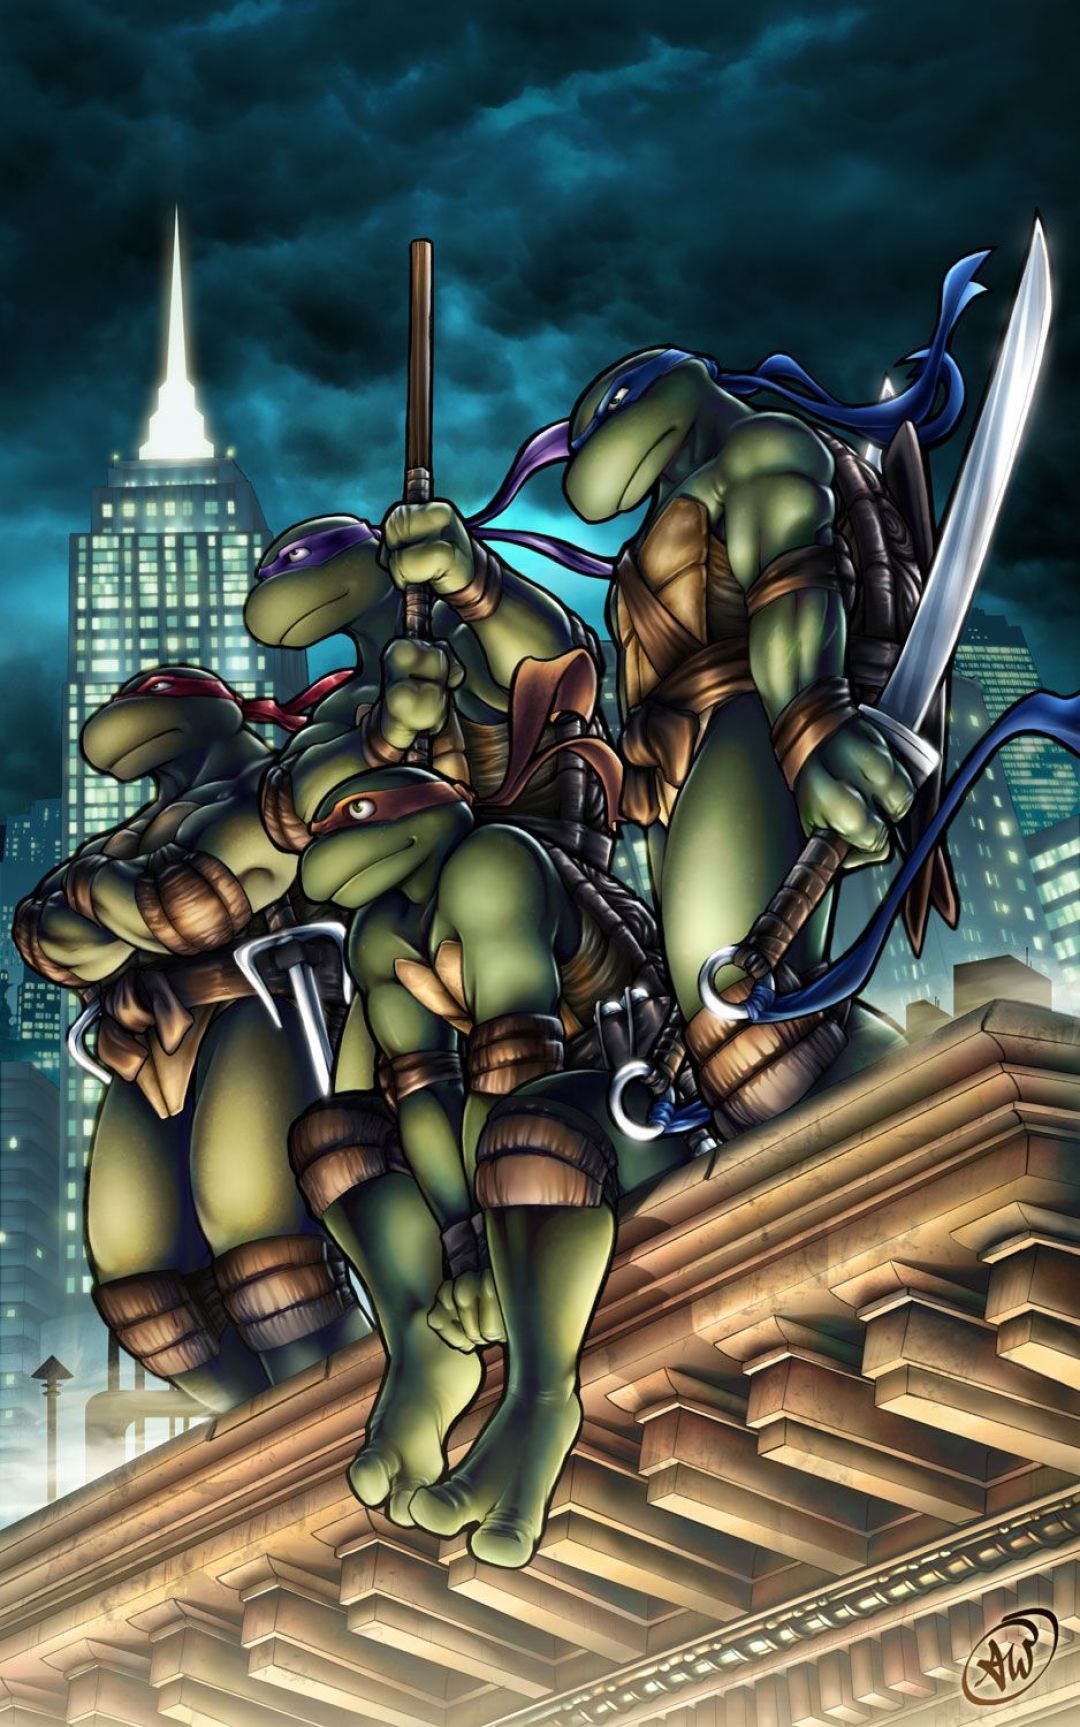 Teenage Mutant Ninja Turtles Comic Book - Teenage Mutant Ninja Turtle Artwork - HD Wallpaper 